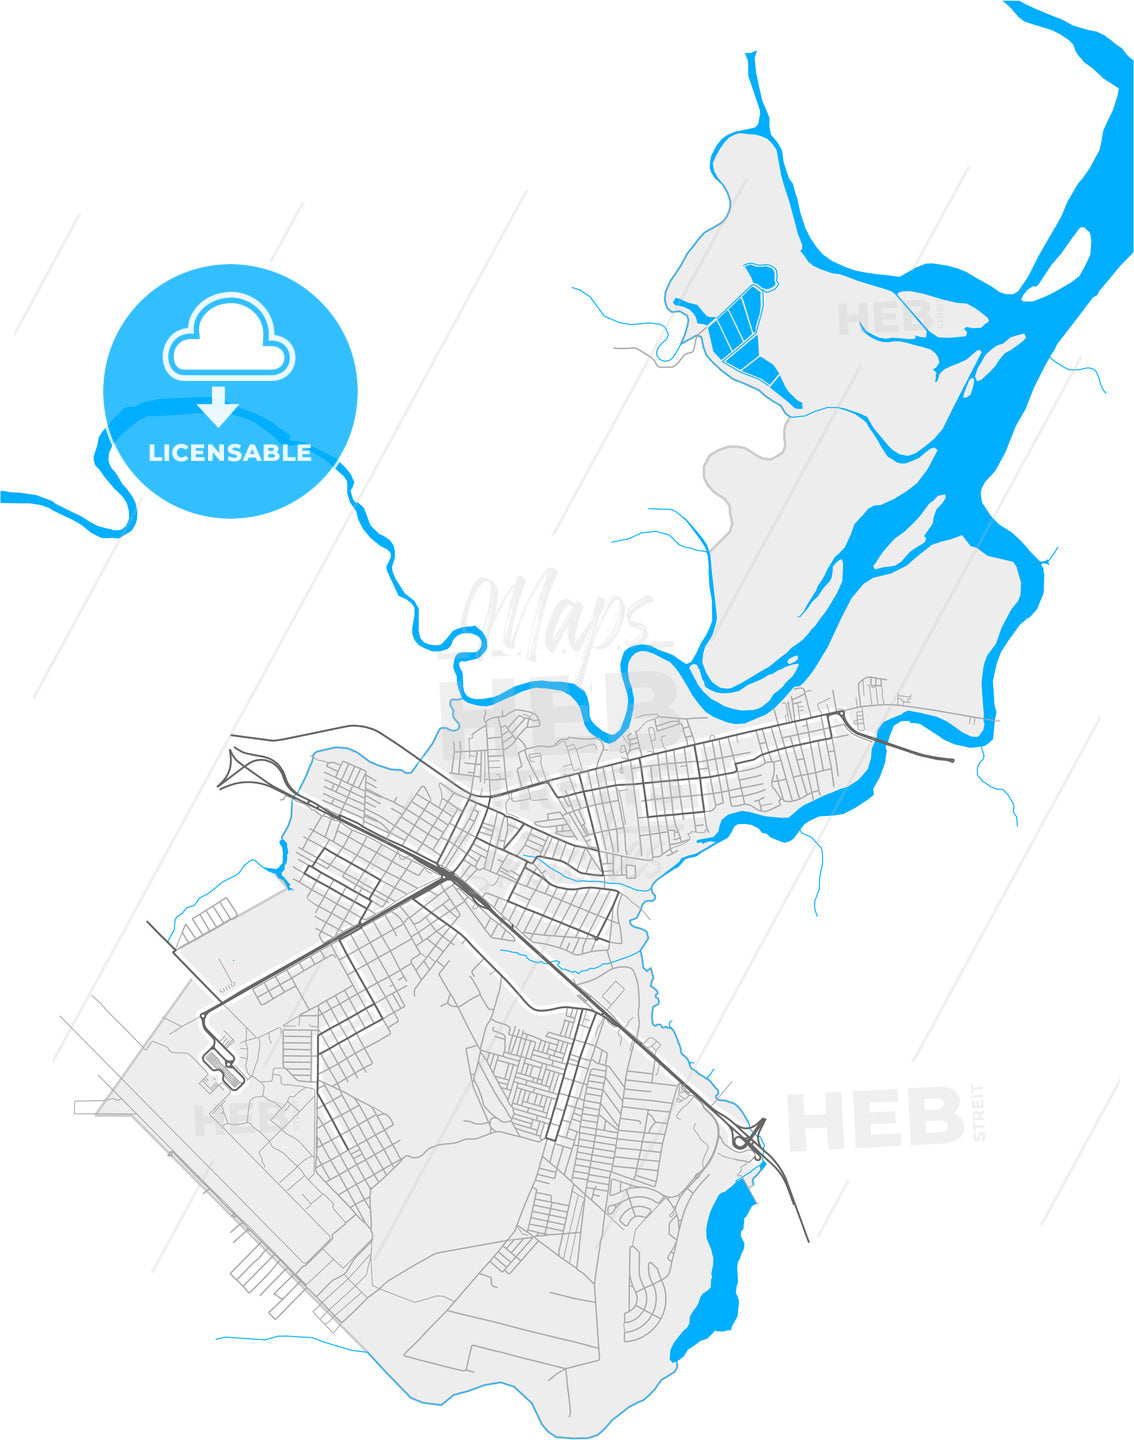 Bayeux, Brazil, high quality vector map